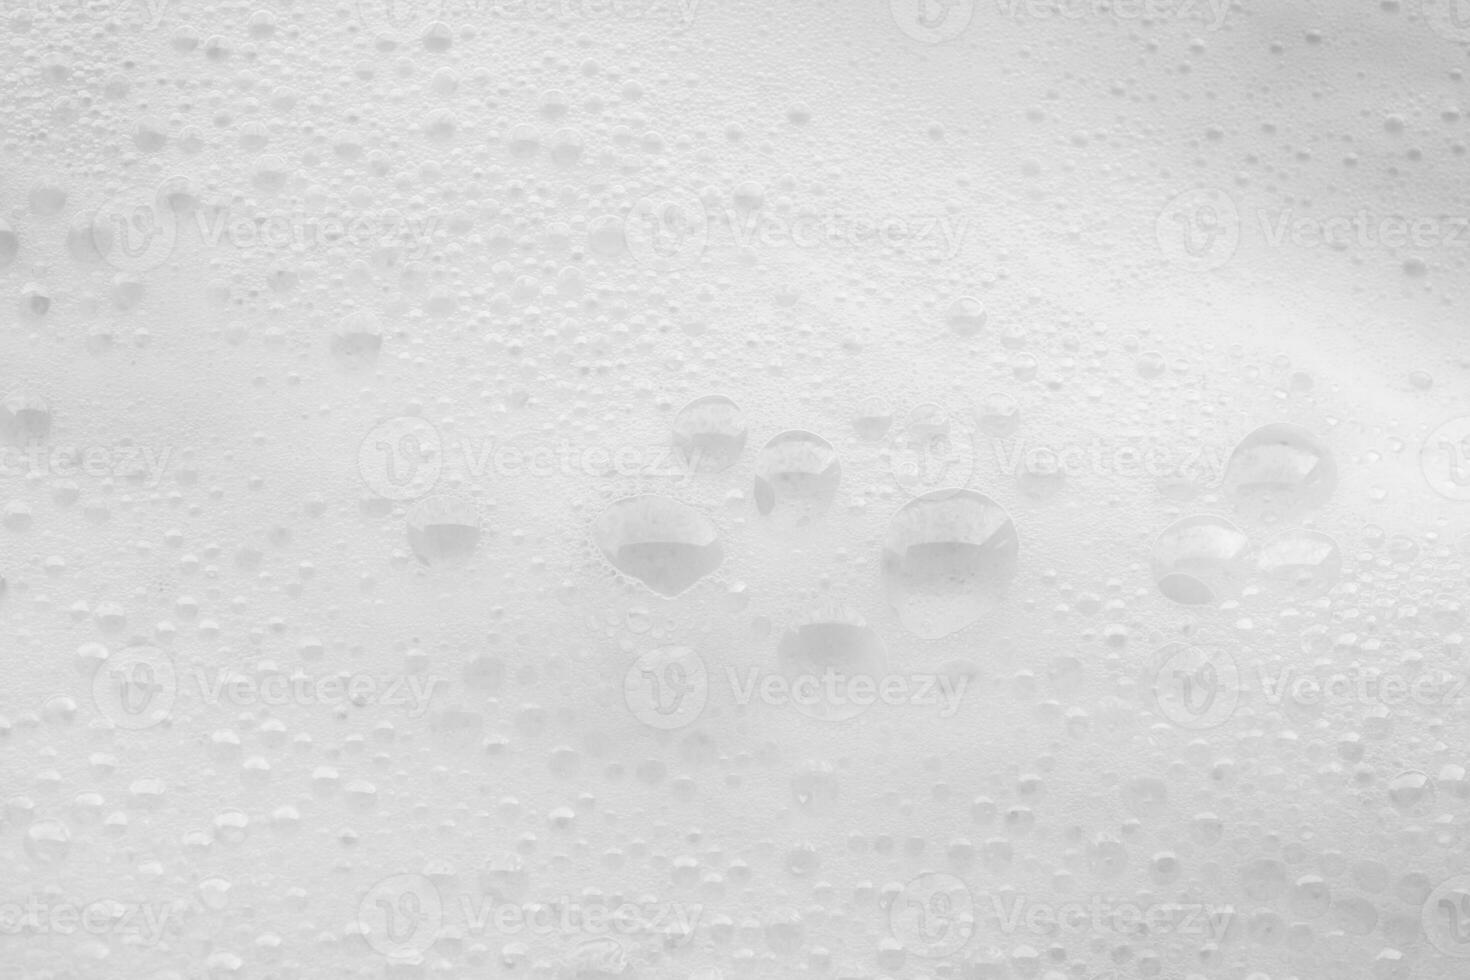 abstrait blanc savon mousse bulles texture Contexte photo